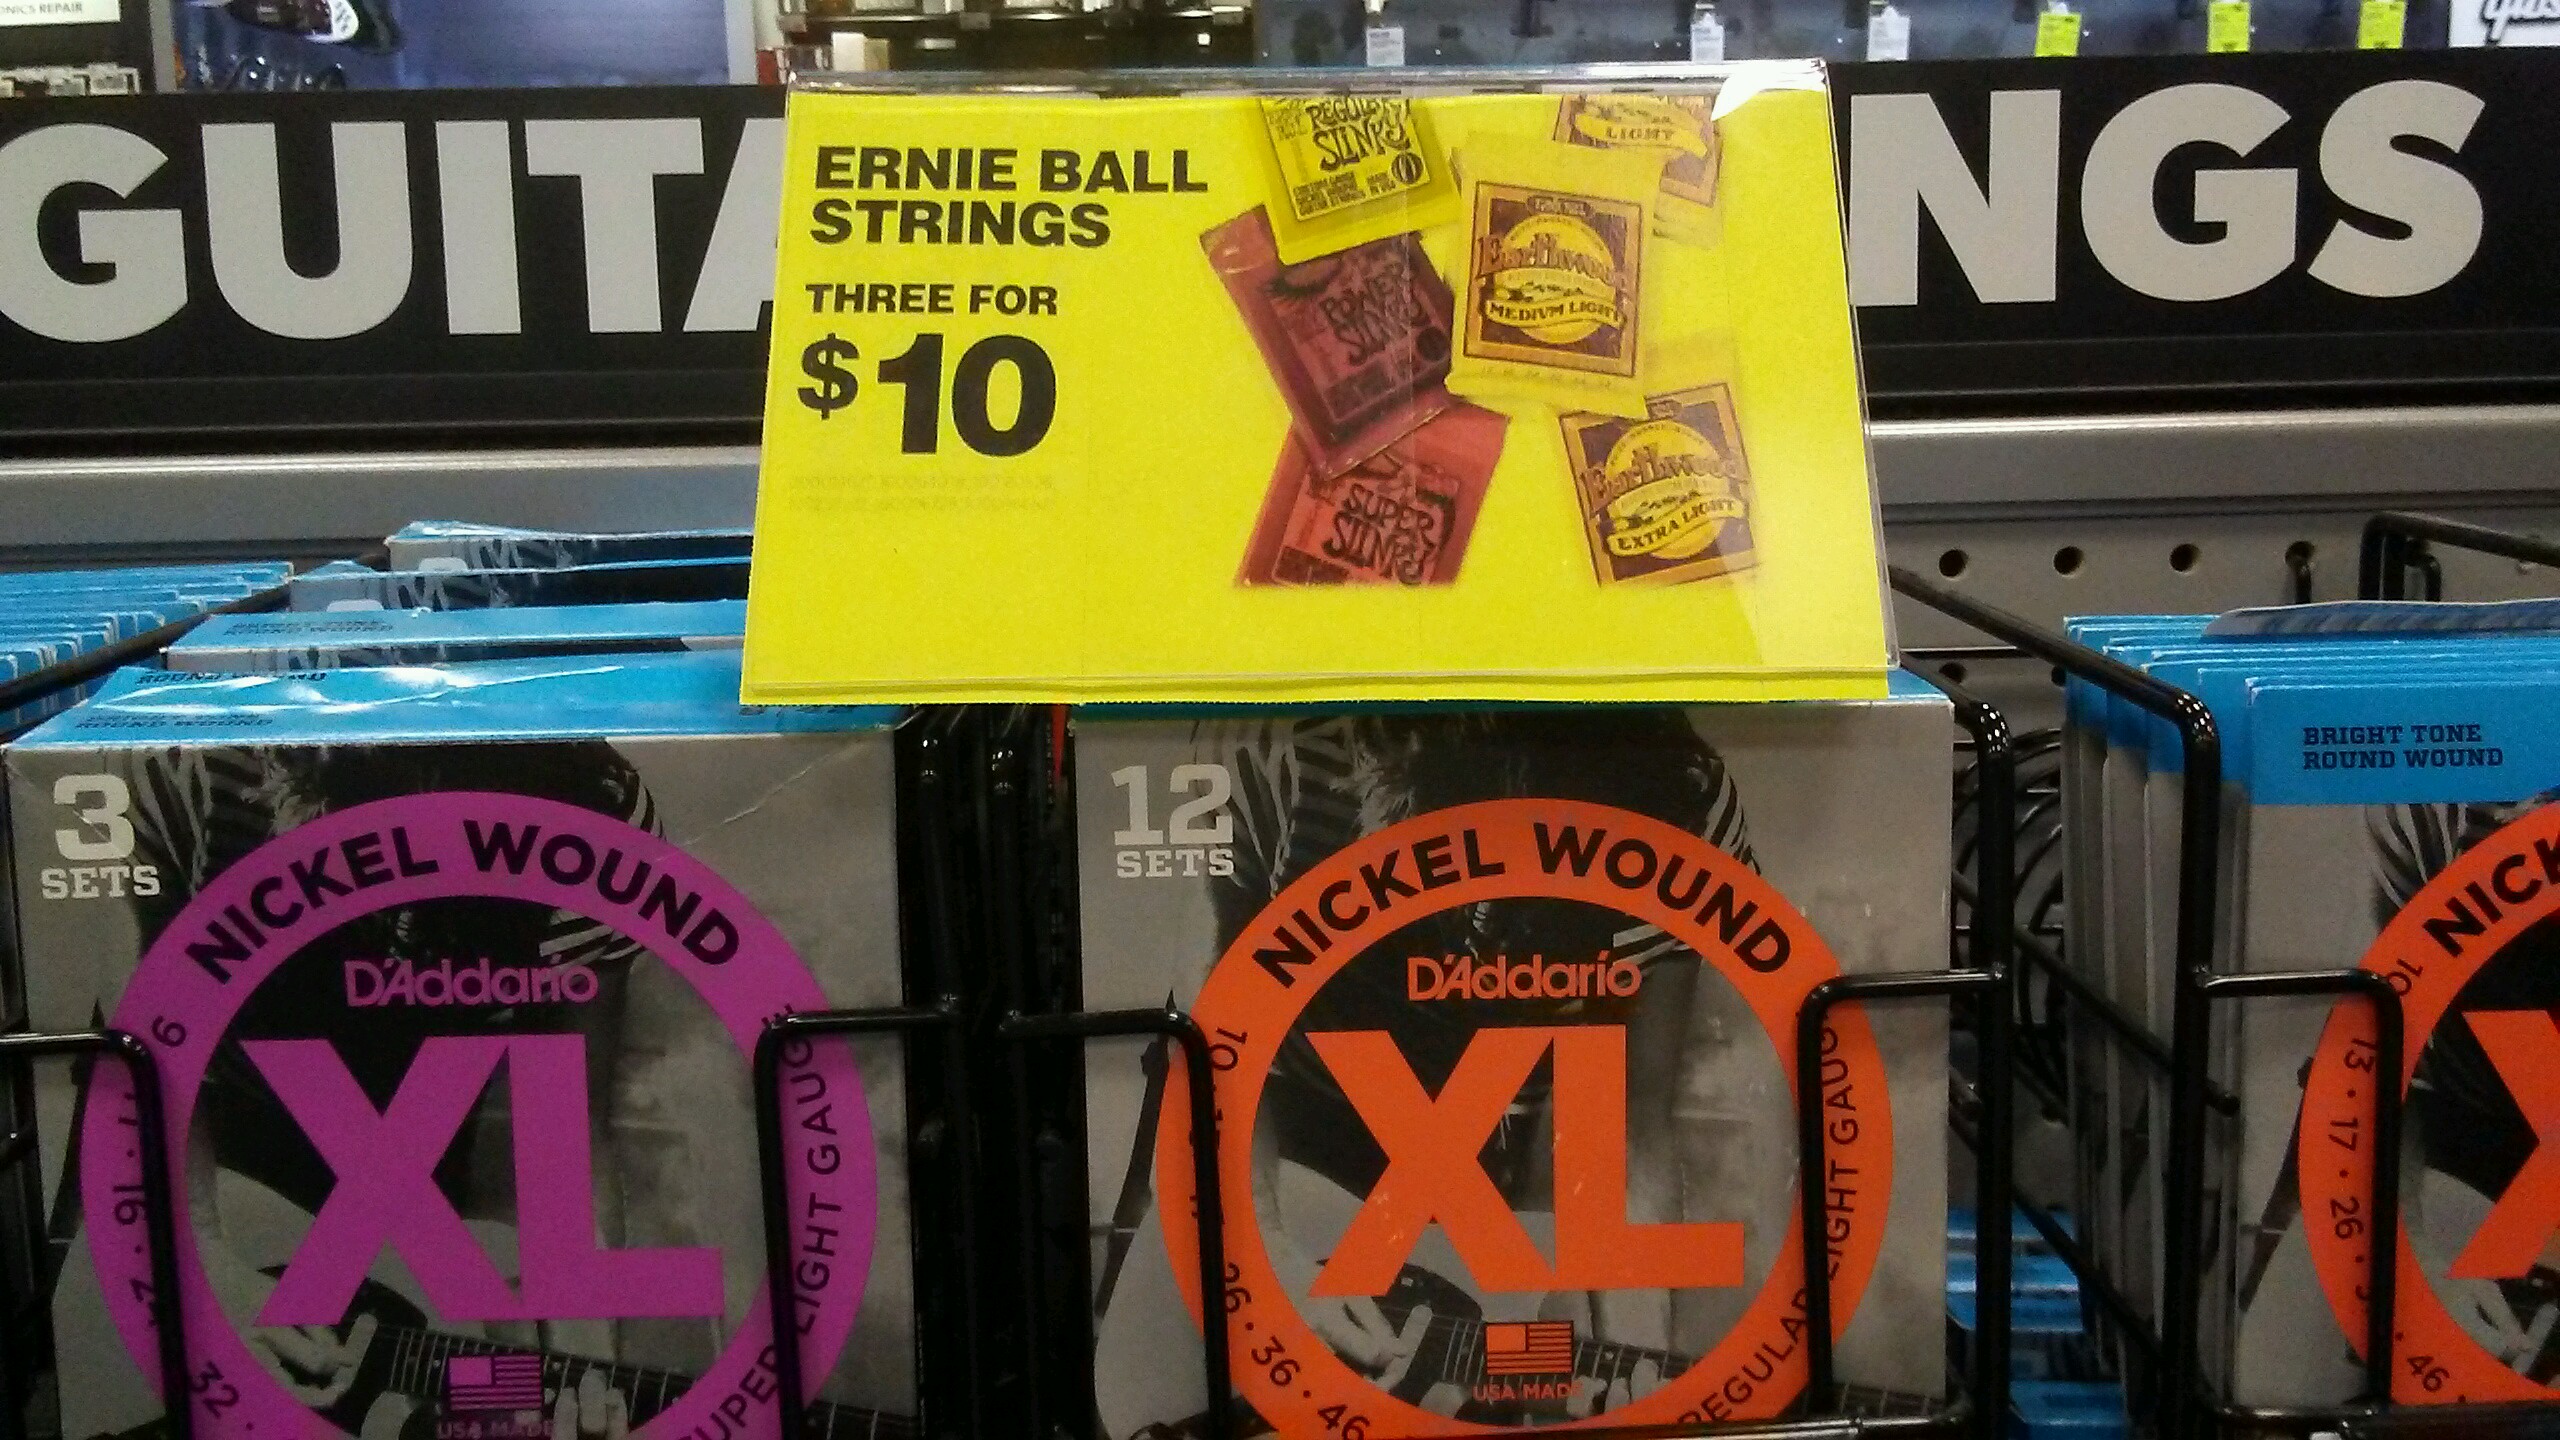 ernie ball strings sale at guitar center